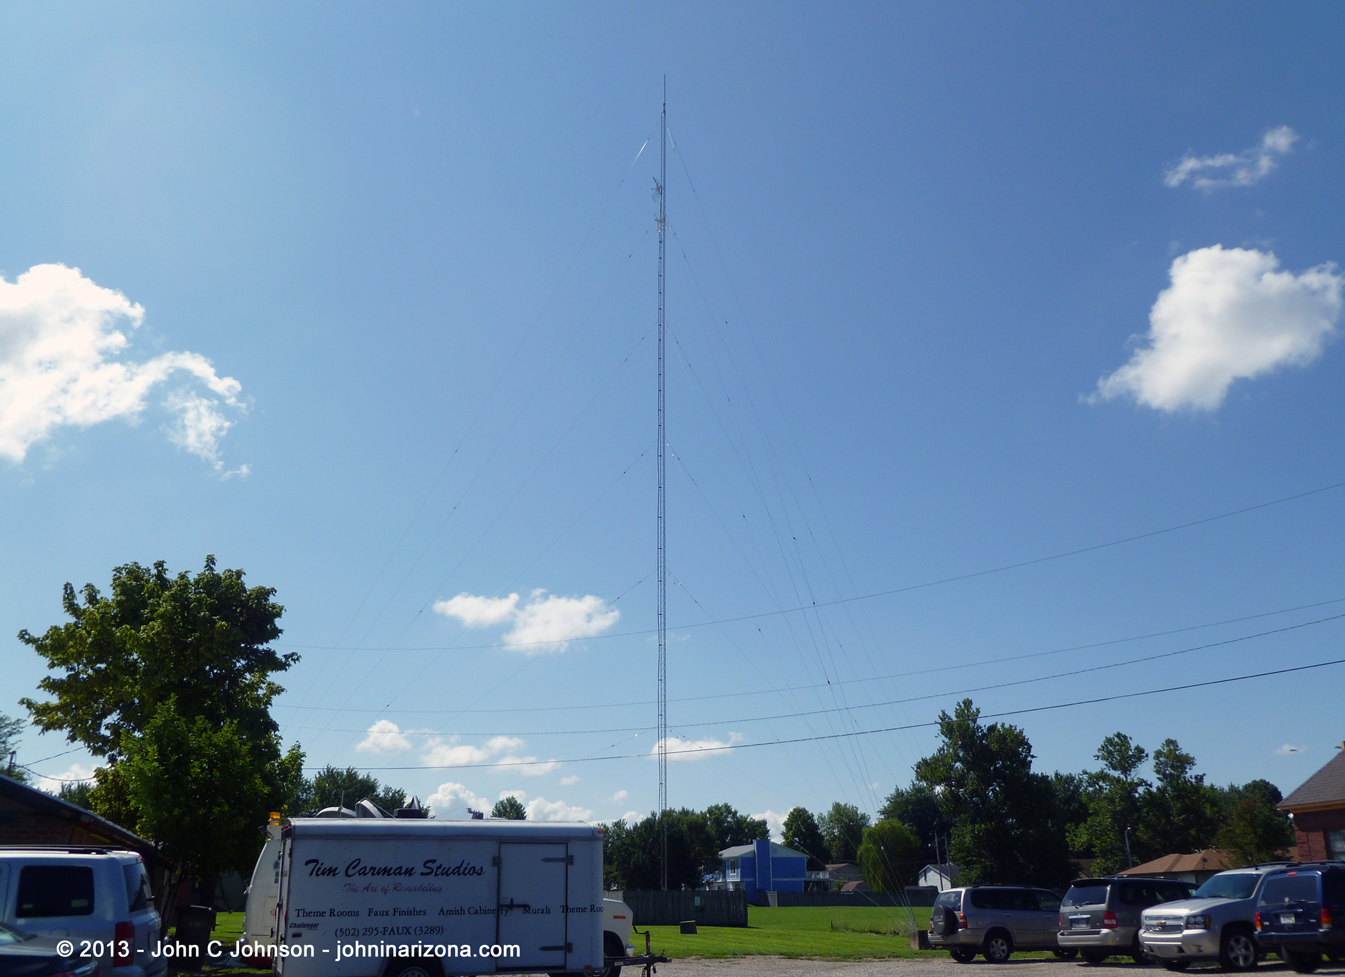 WNDA Radio 1570 New Albany, Indiana